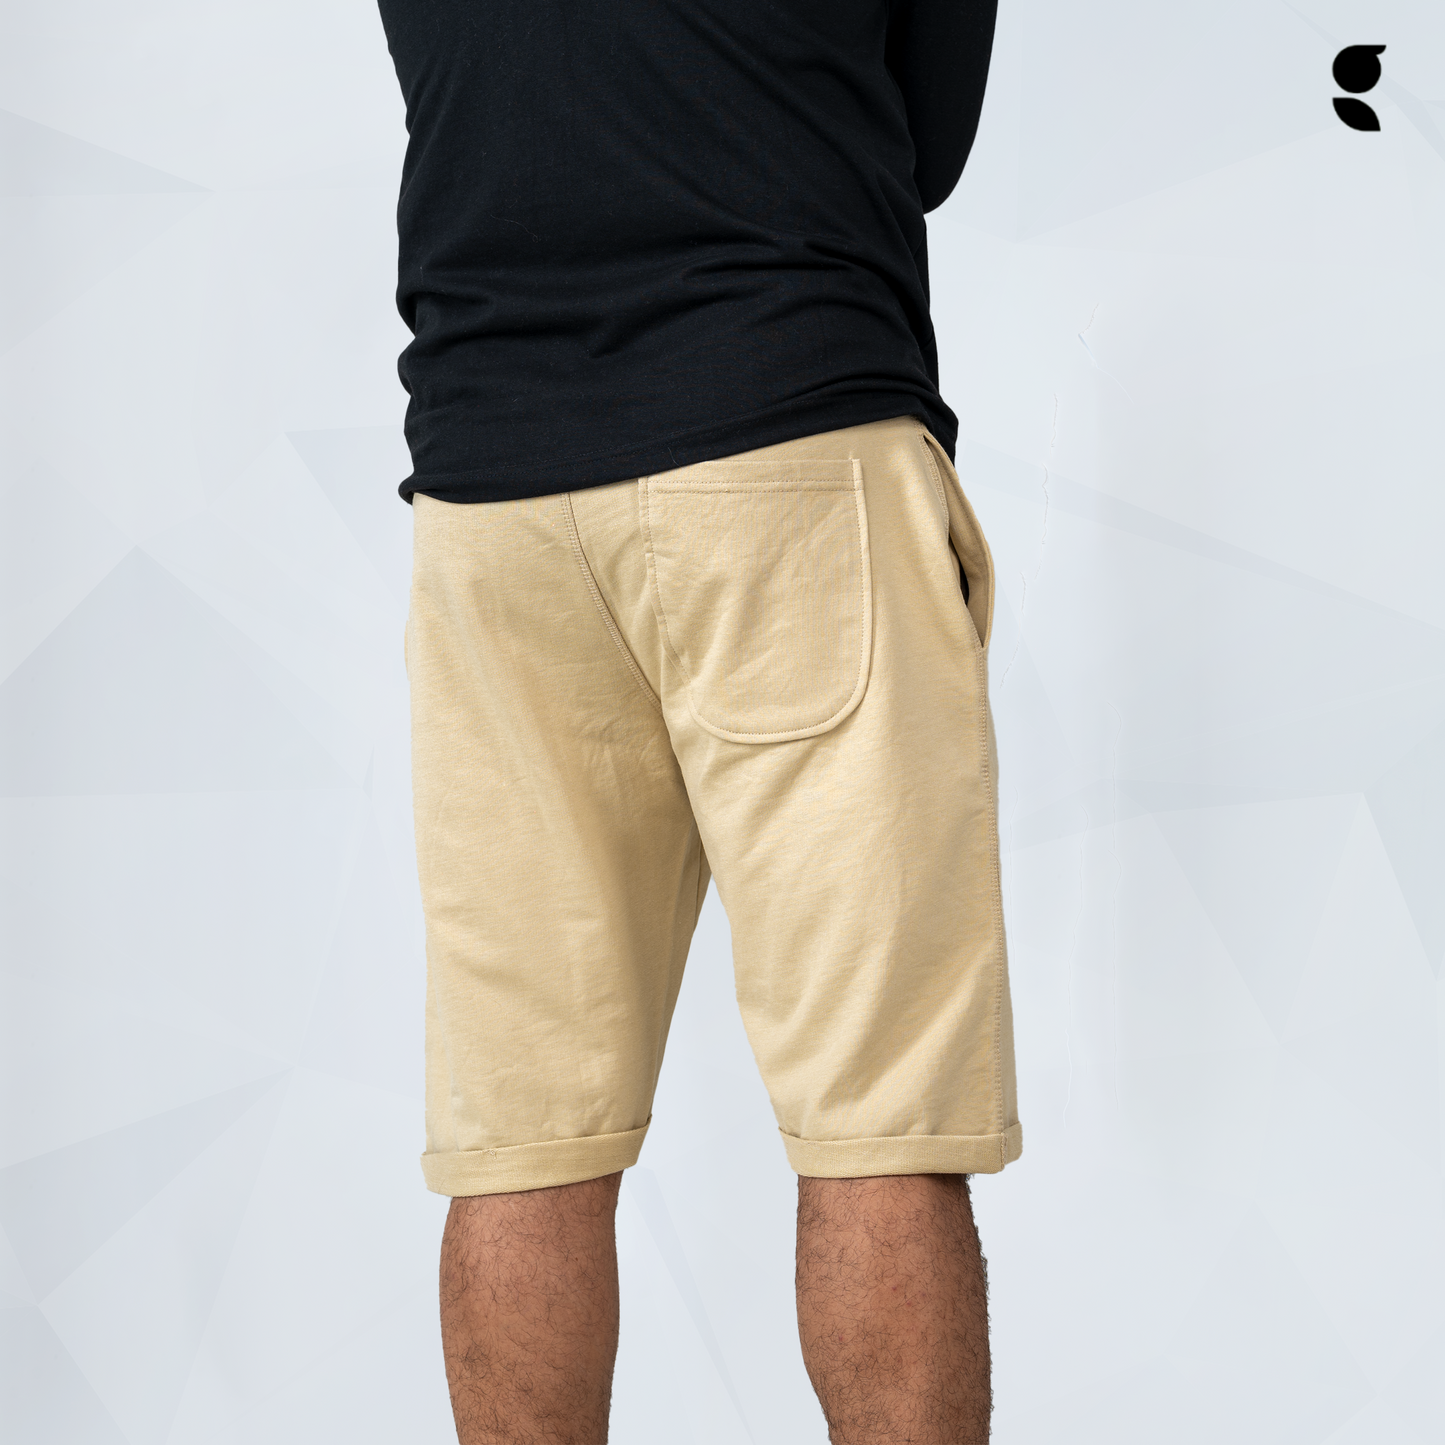 Sweatlock Shorts | Khaki